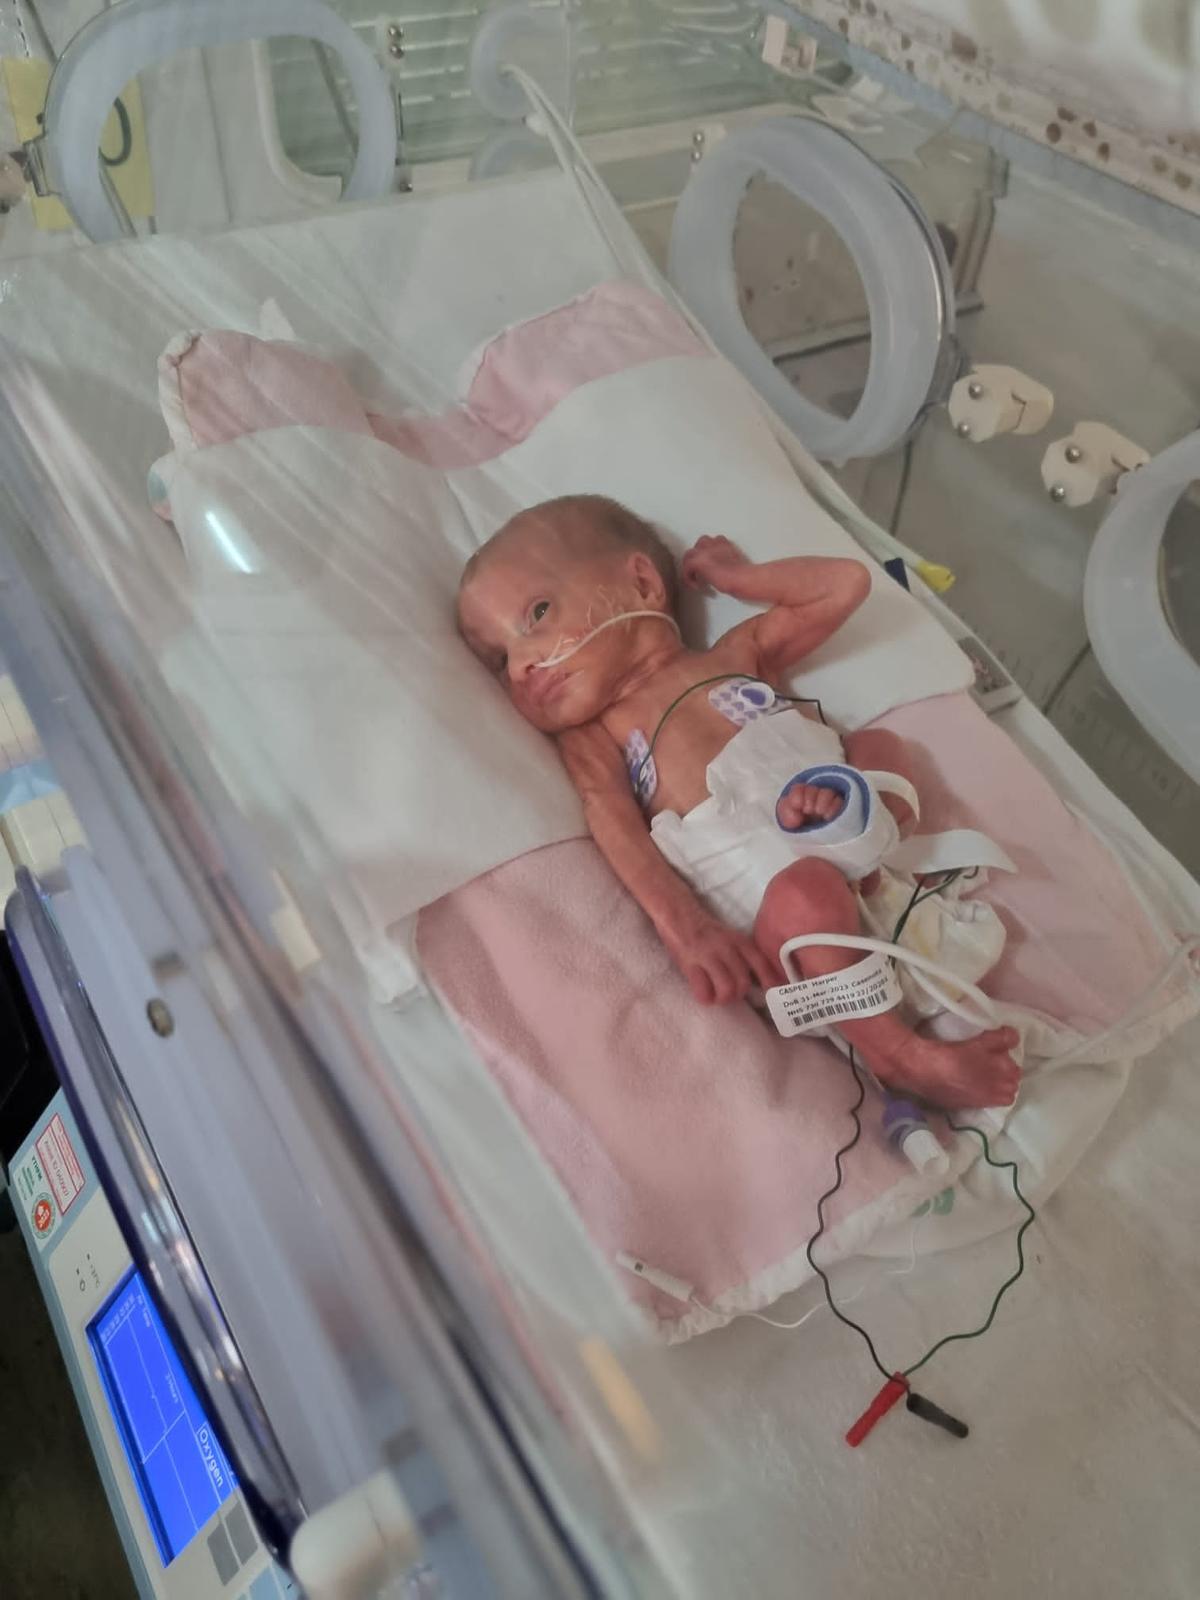 Harper-Gwen Casper when first born, in her incubator. (SWNS)